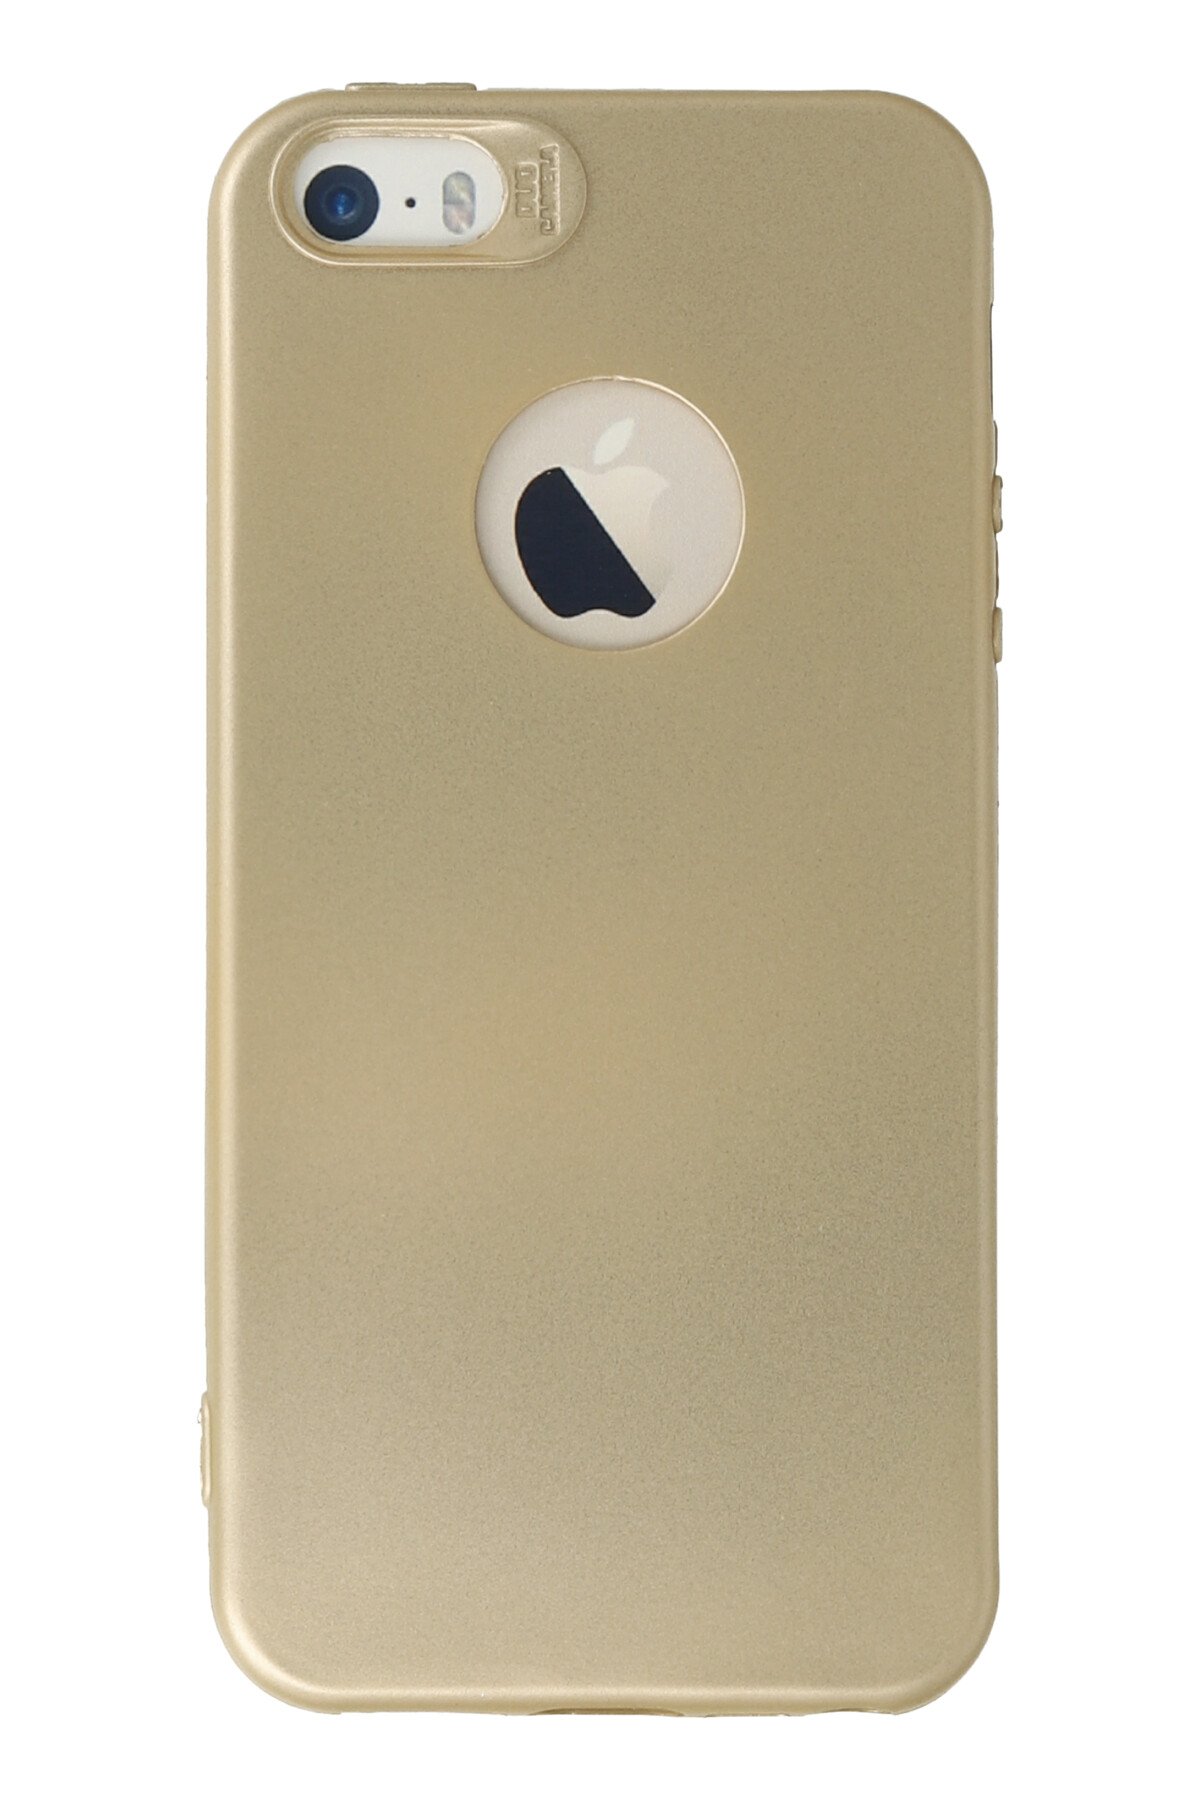 Newface iPhone 5 Kılıf Sofya Yüzüklü Silikon Kapak - Siyah